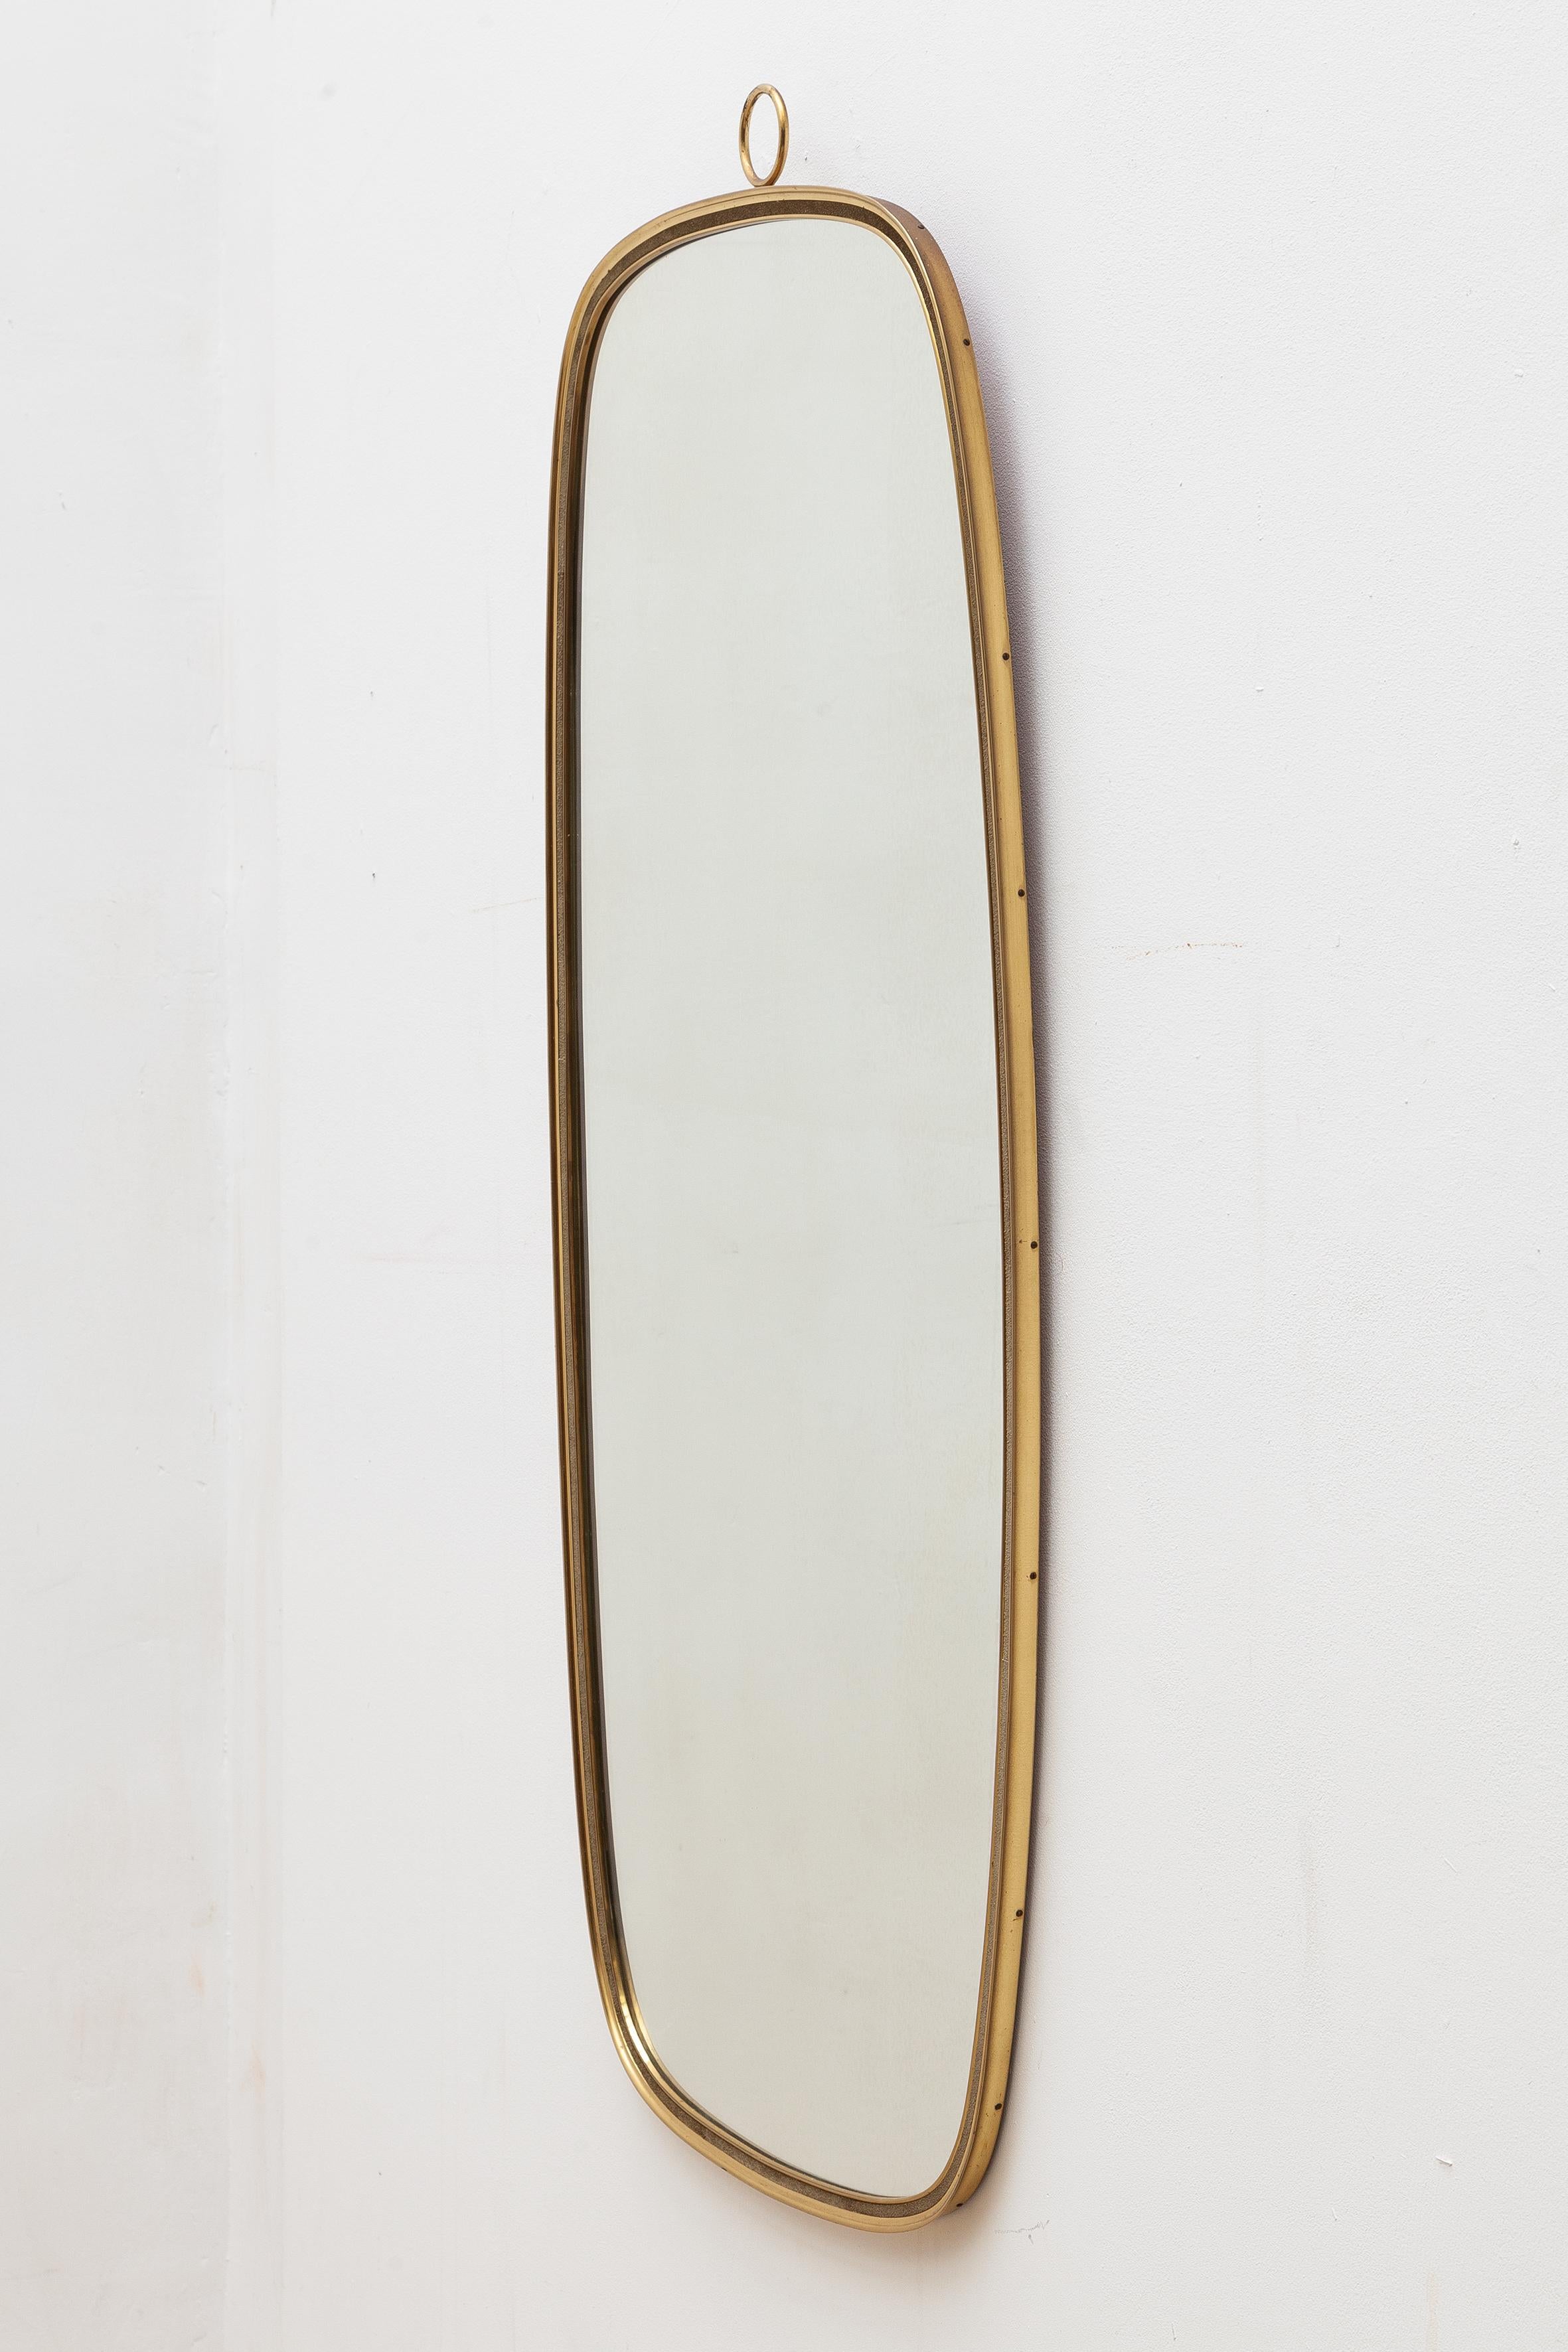 Mid-Century Modern Midcentury Oval Brass Mirror 1950s, Italy